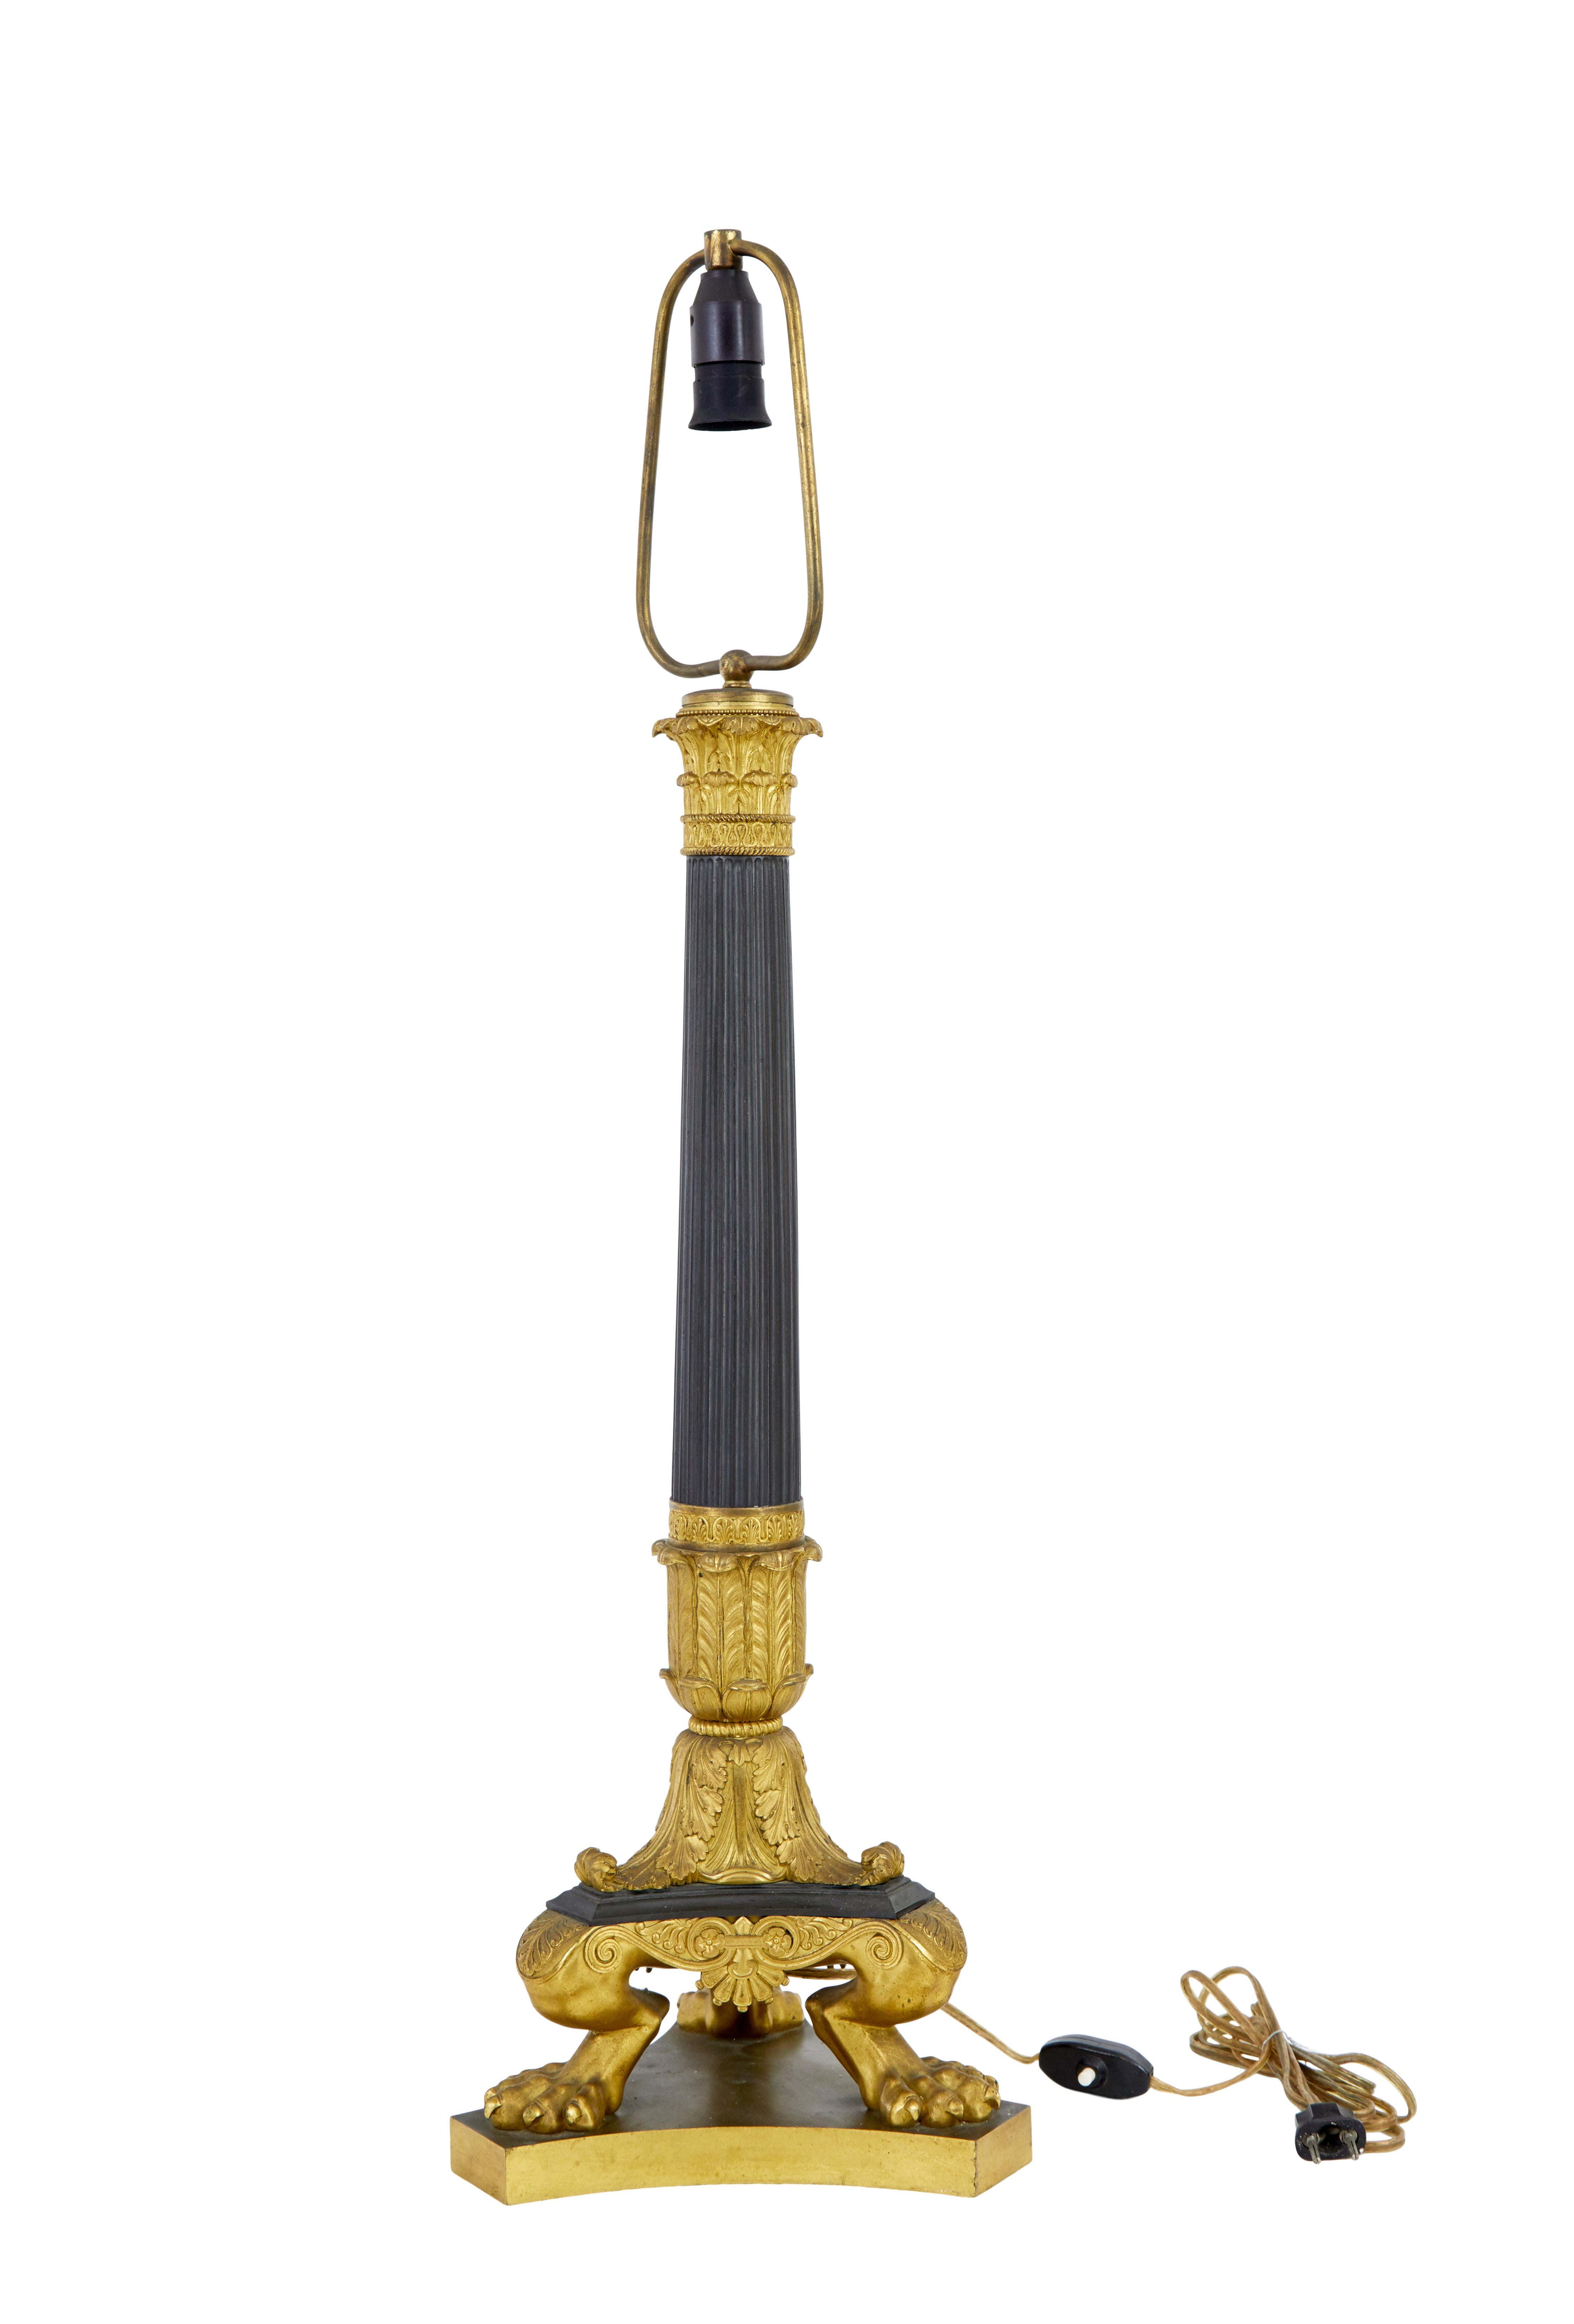 Grande lampe en bronze doré de style empire français du 19e siècle, vers 1860.

Nous avons ici une lampe de la plus haute qualité, qui était auparavant une lampe à gaz, mais qui a été convertie à l'électricité dans les années 1930.

Grande lampe